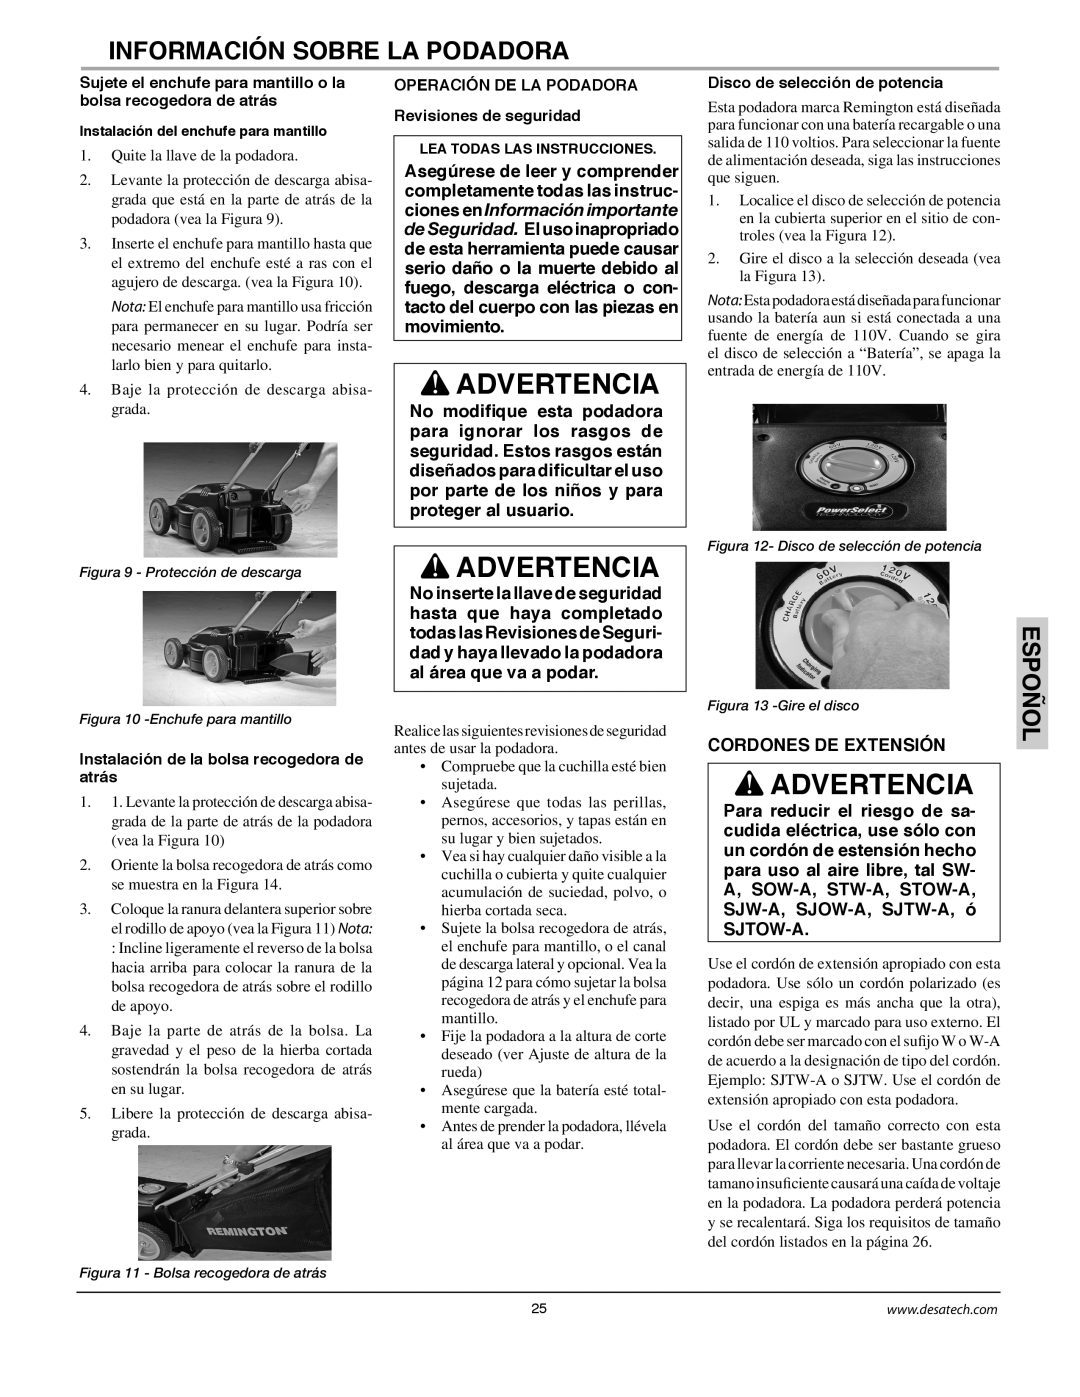 Remington Power Tools MPS6017A manual Advertencia, Información Sobre La Podadora, Espoñol, Cordones De Extensión 